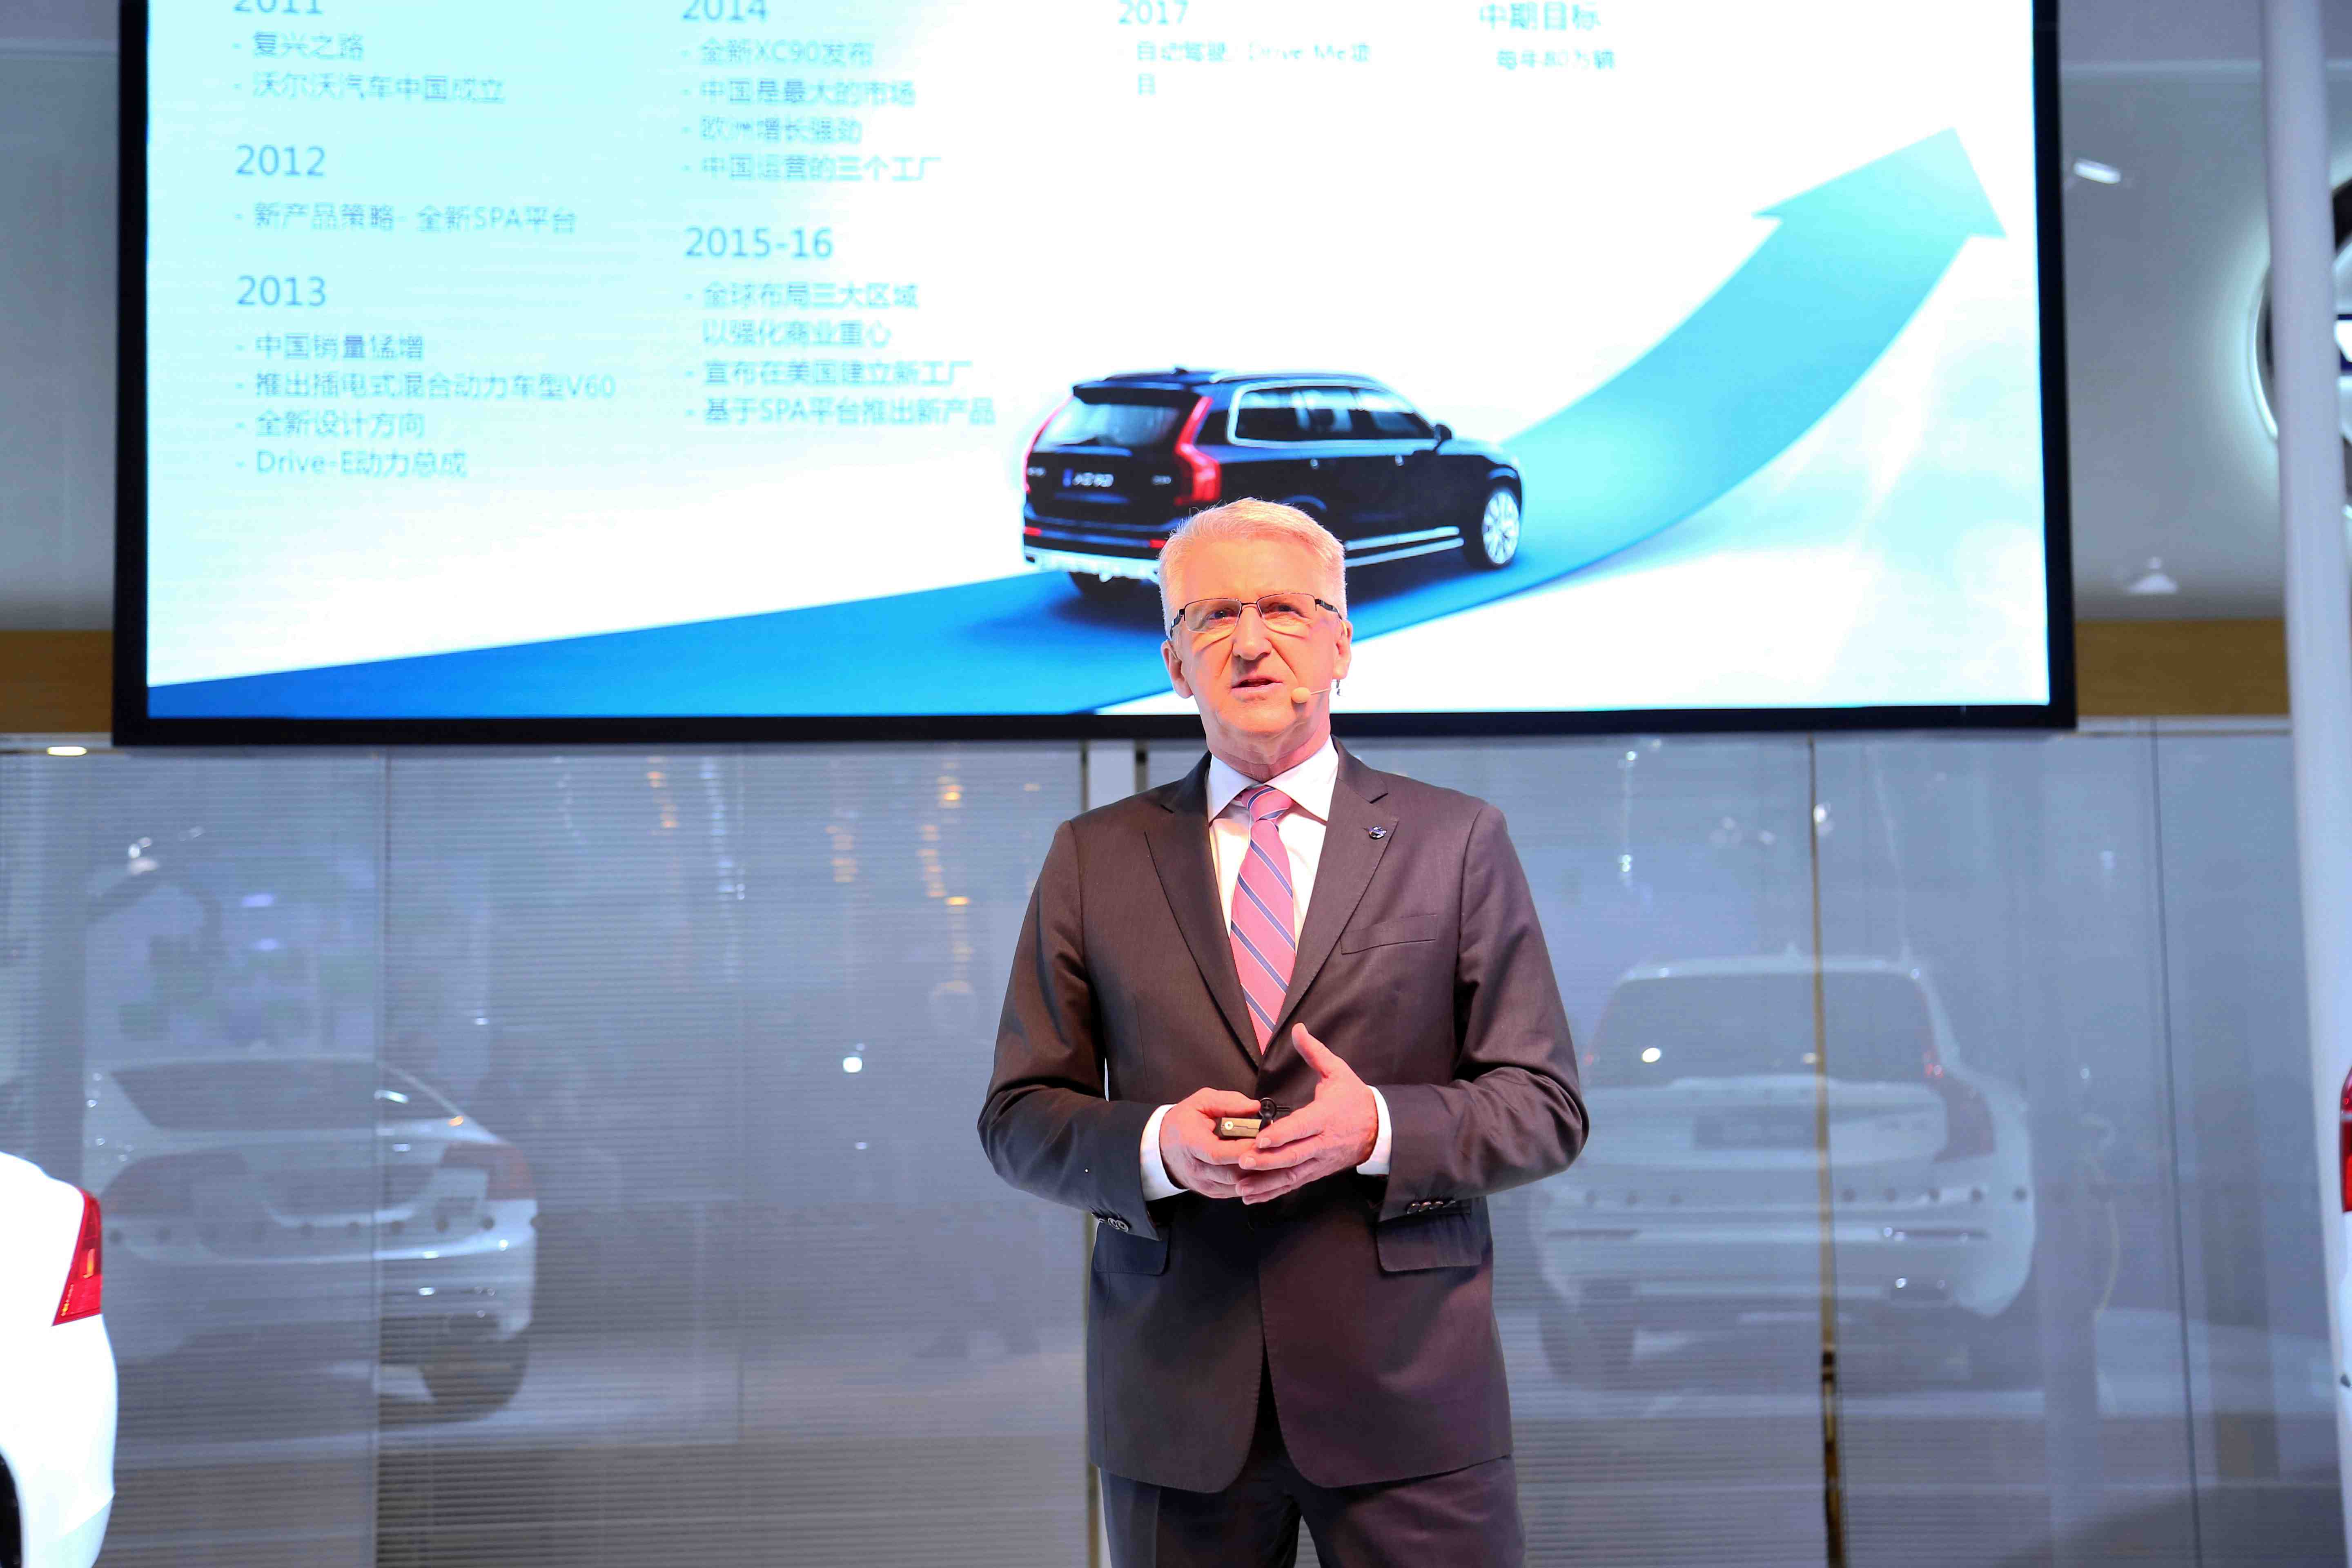 沃尔沃汽车集团全球高级副总裁兼亚太区首席执行官拉尔斯·邓先生致辞